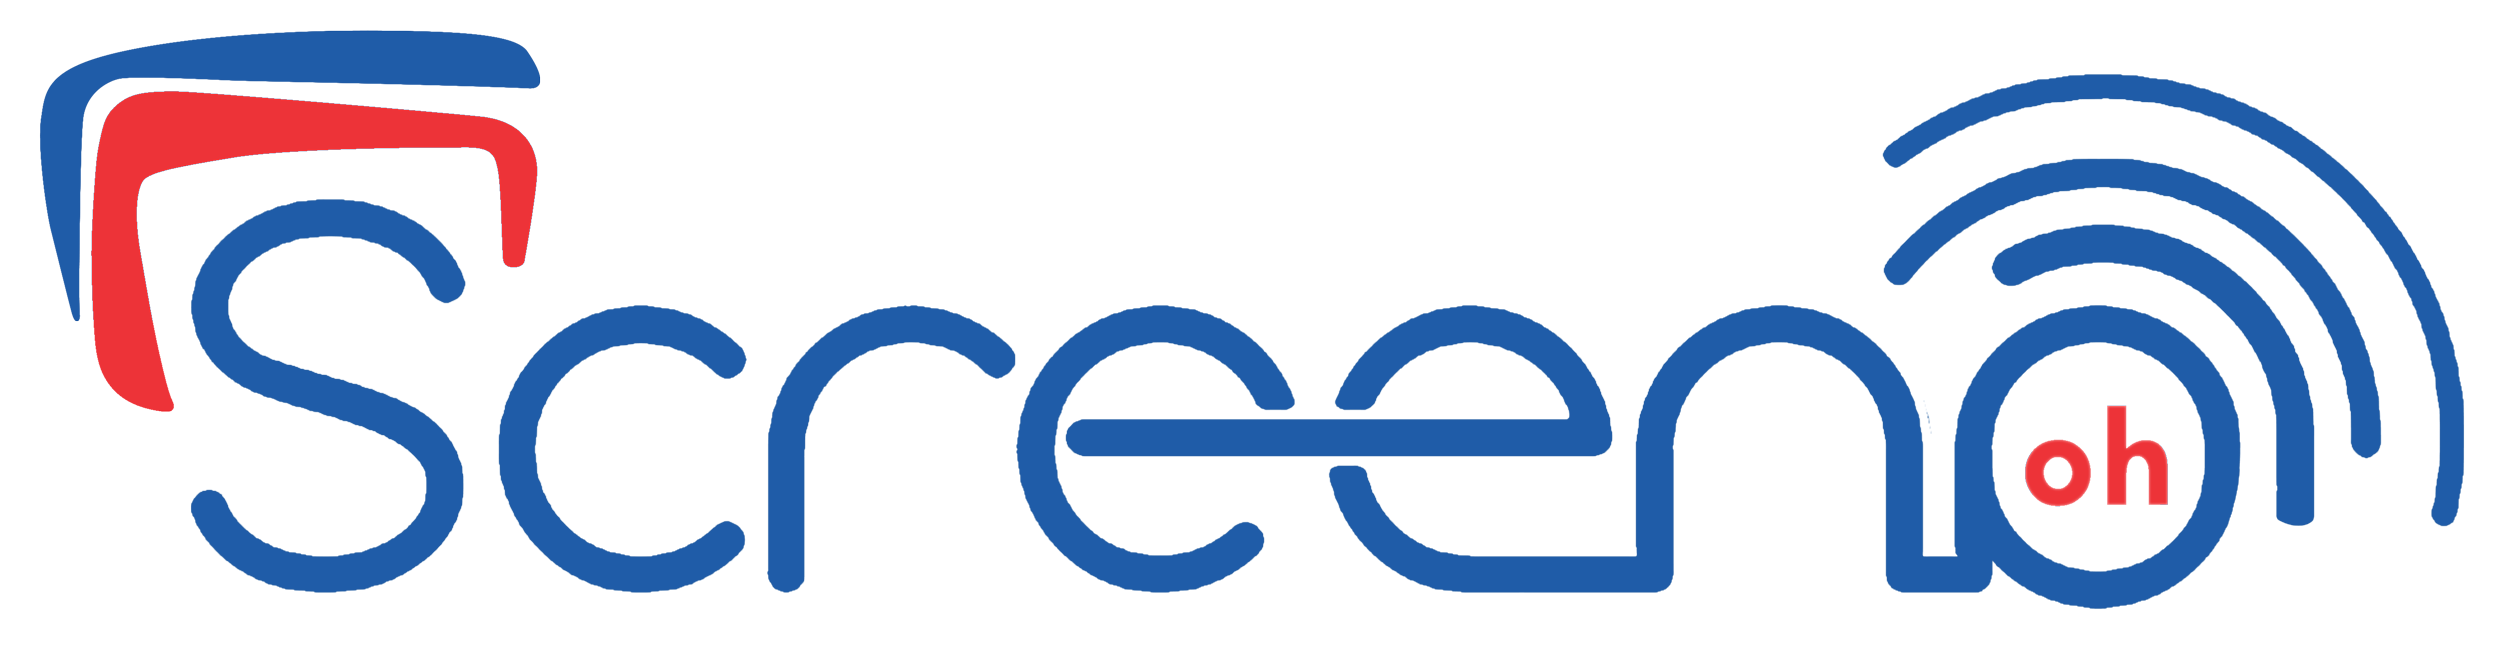 screeno_logo